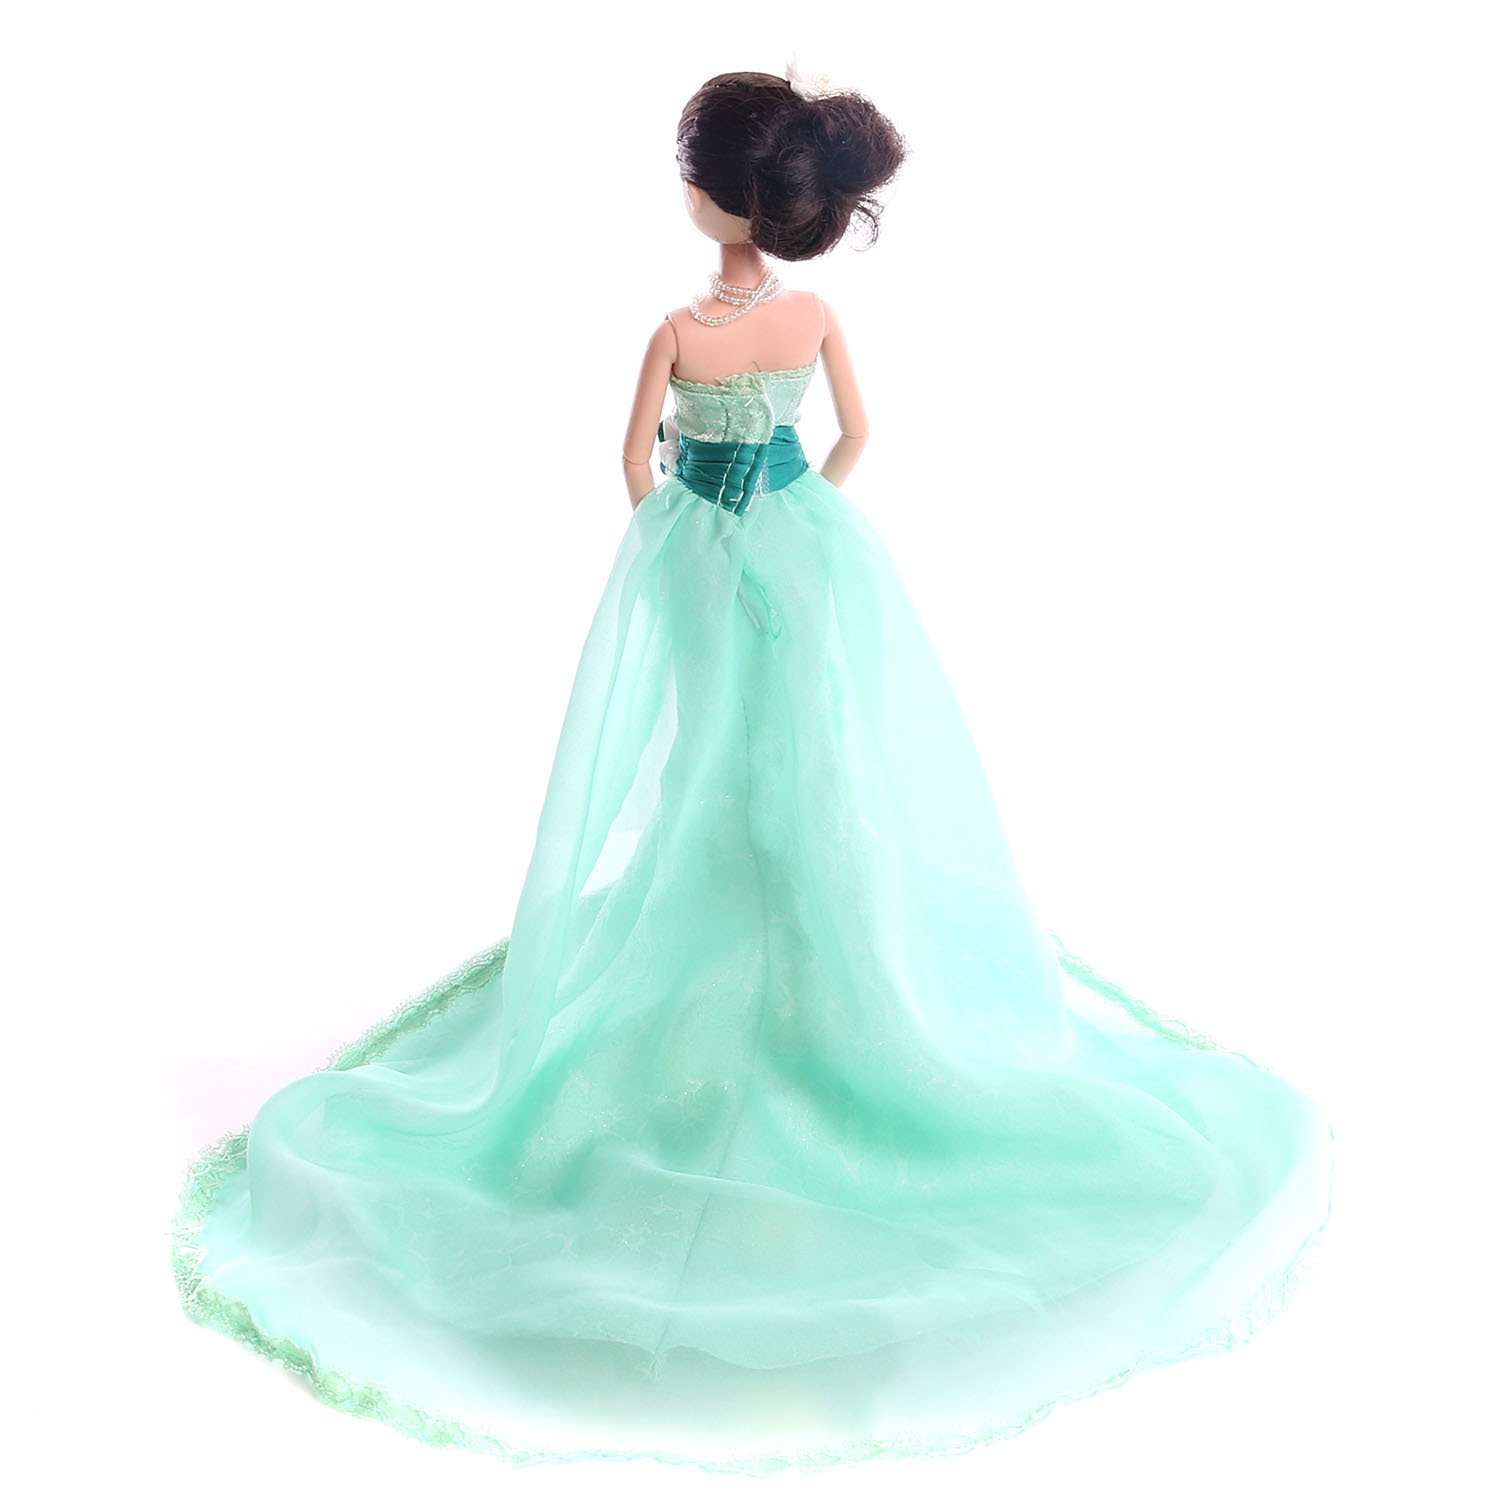 Кукла Sonya Rose платье Жасмин R4339N - фото 2